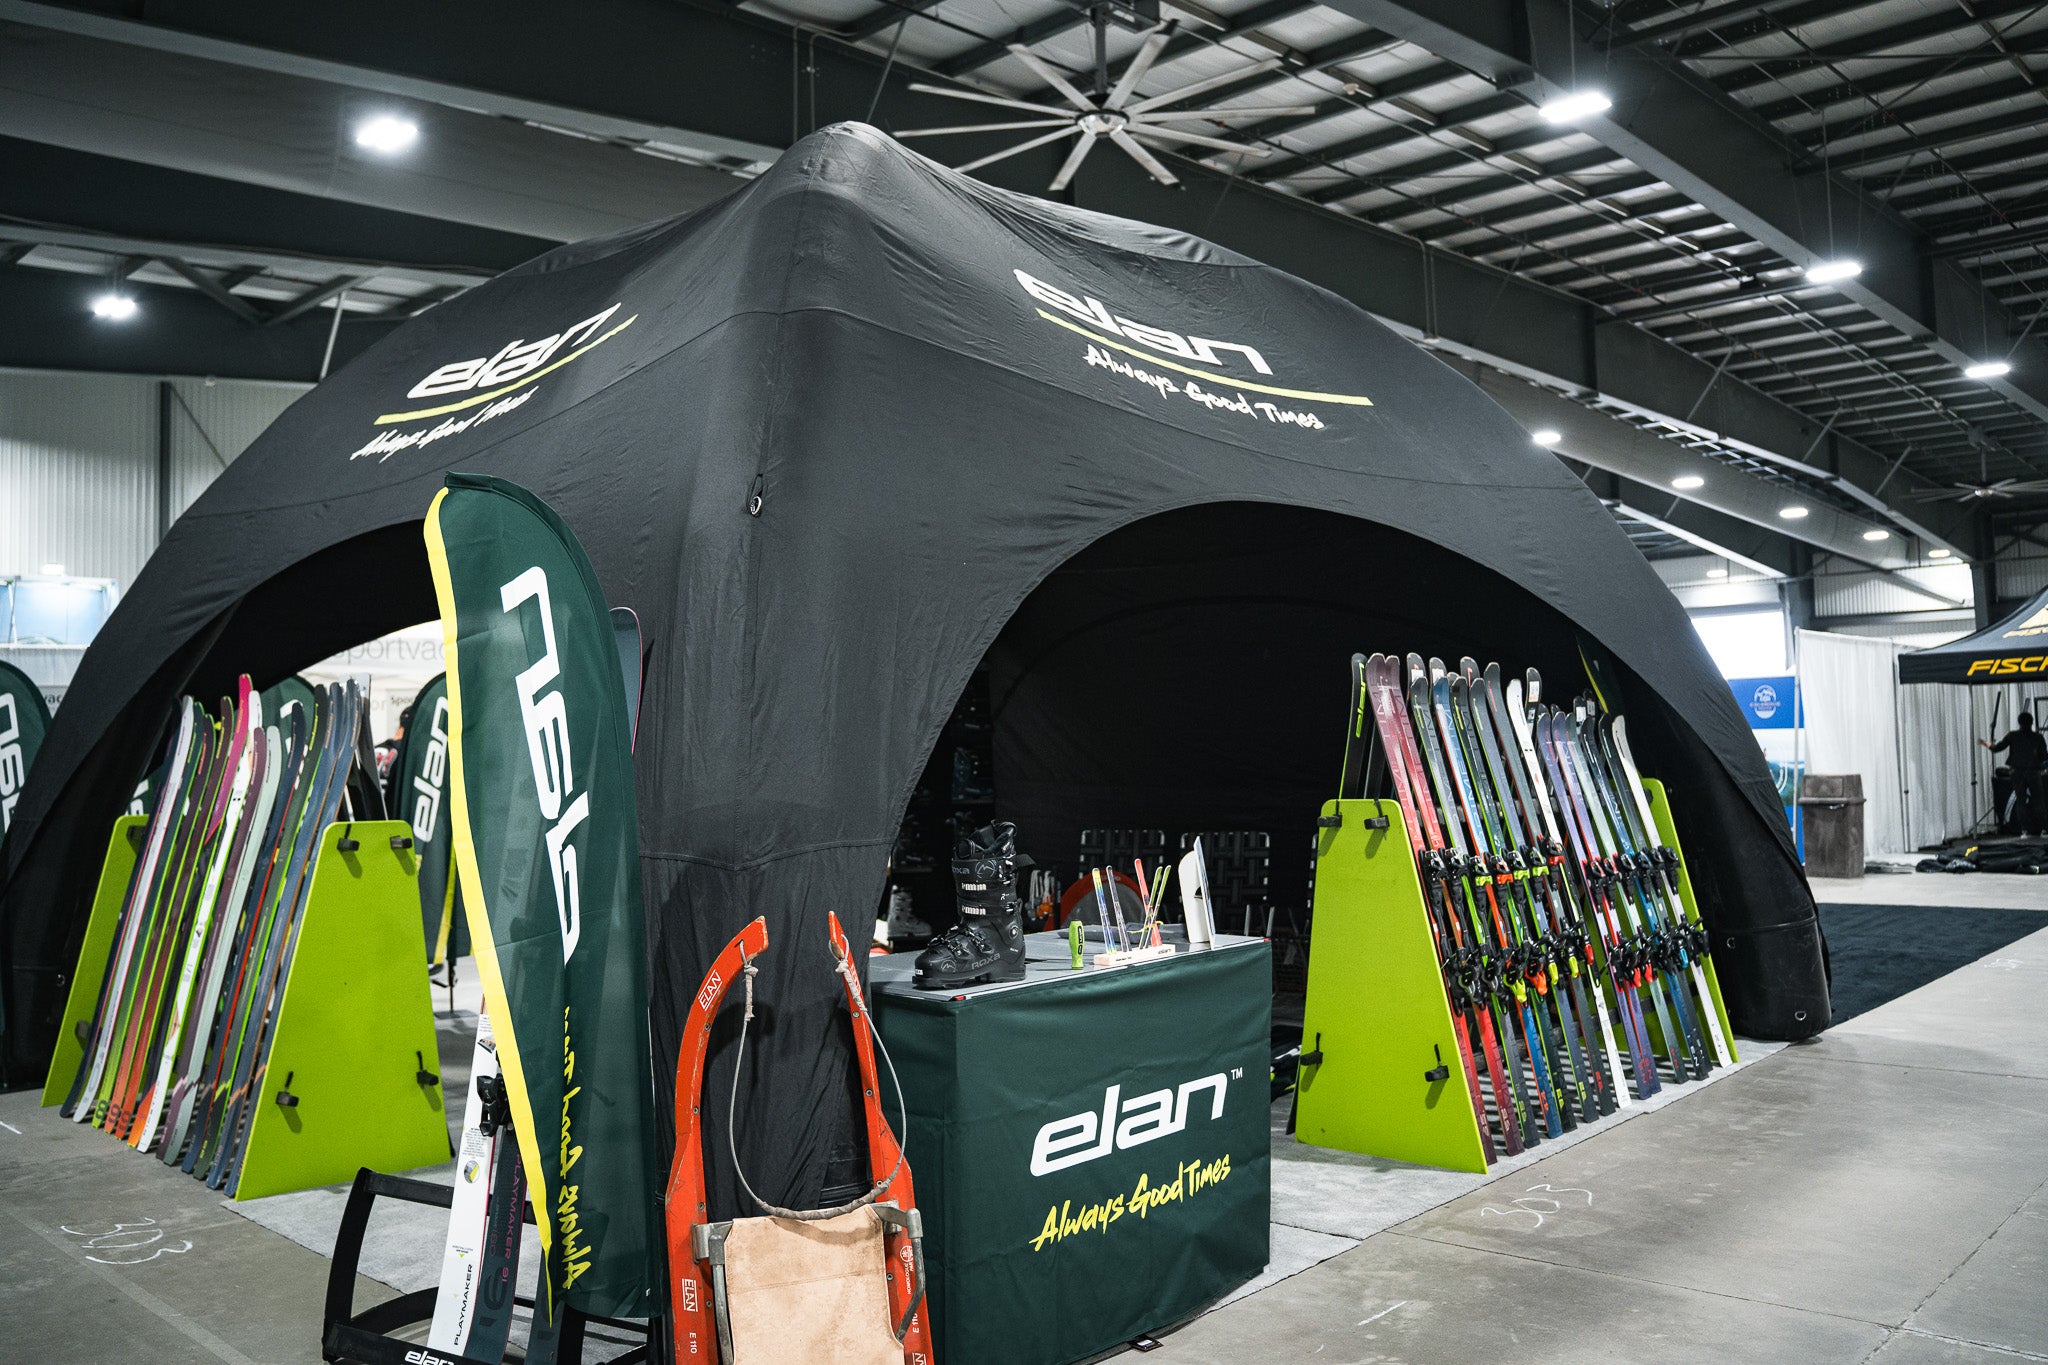 Elan Skis Exhibitor Booth